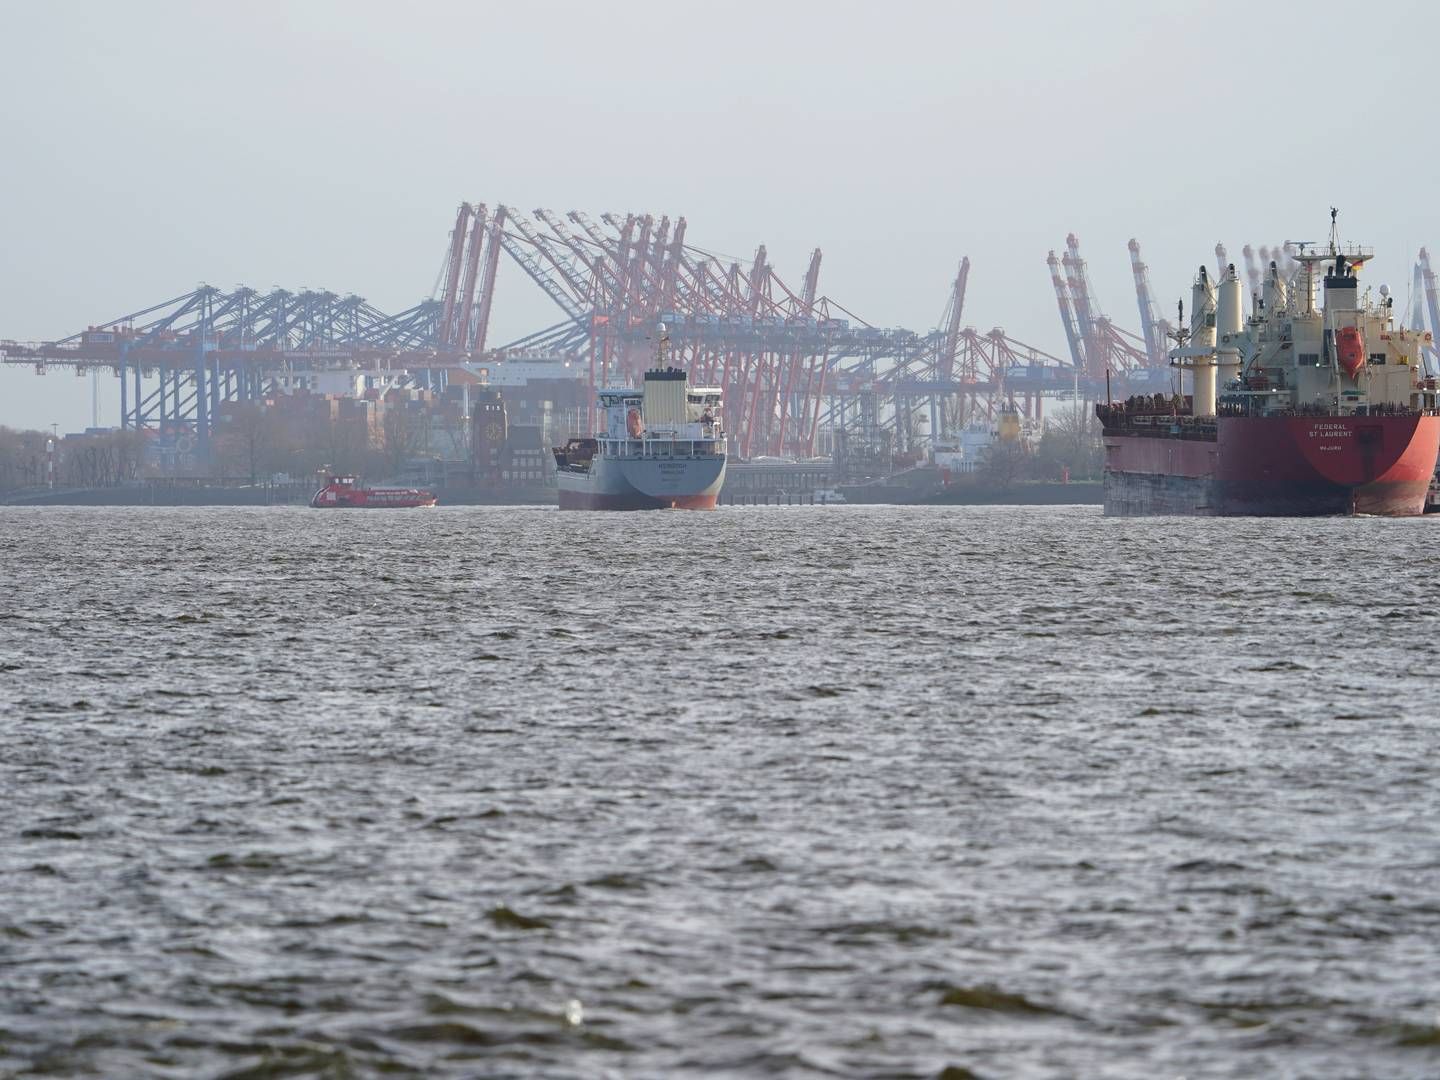 Den langsigtede udvikling af havnen i Hamborg skal sikres langt bedre gennem offentlige investeringer, opfordrer regionale erhvervsorganisationer. | Foto: Marcus Brandt/AP/Ritzau Scanpix